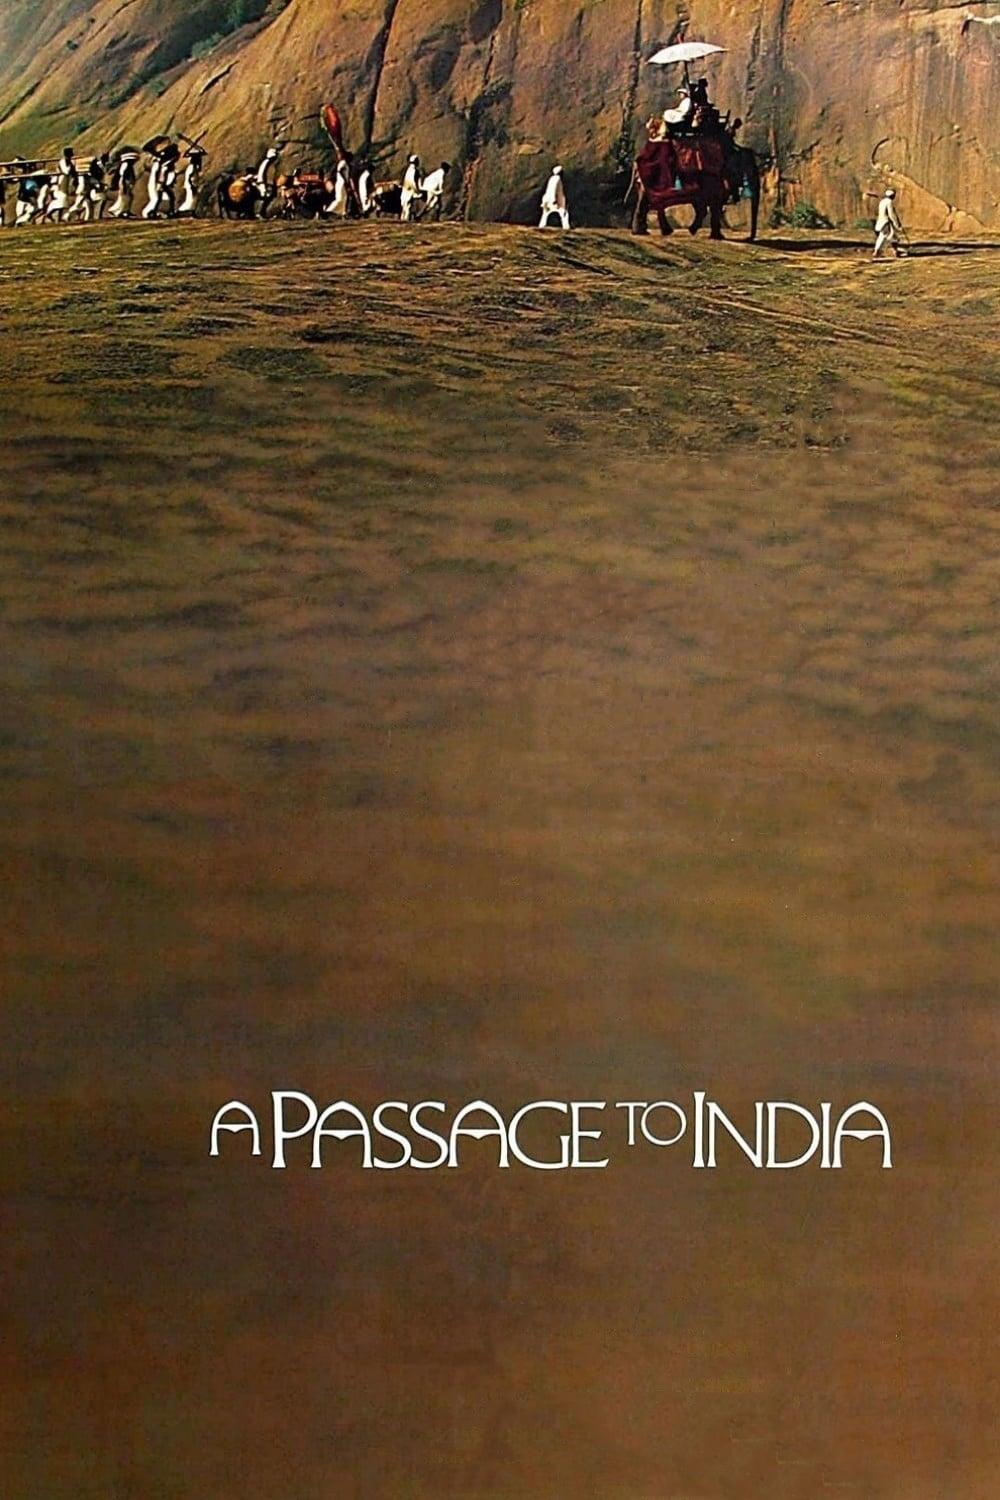 Reise nach Indien poster